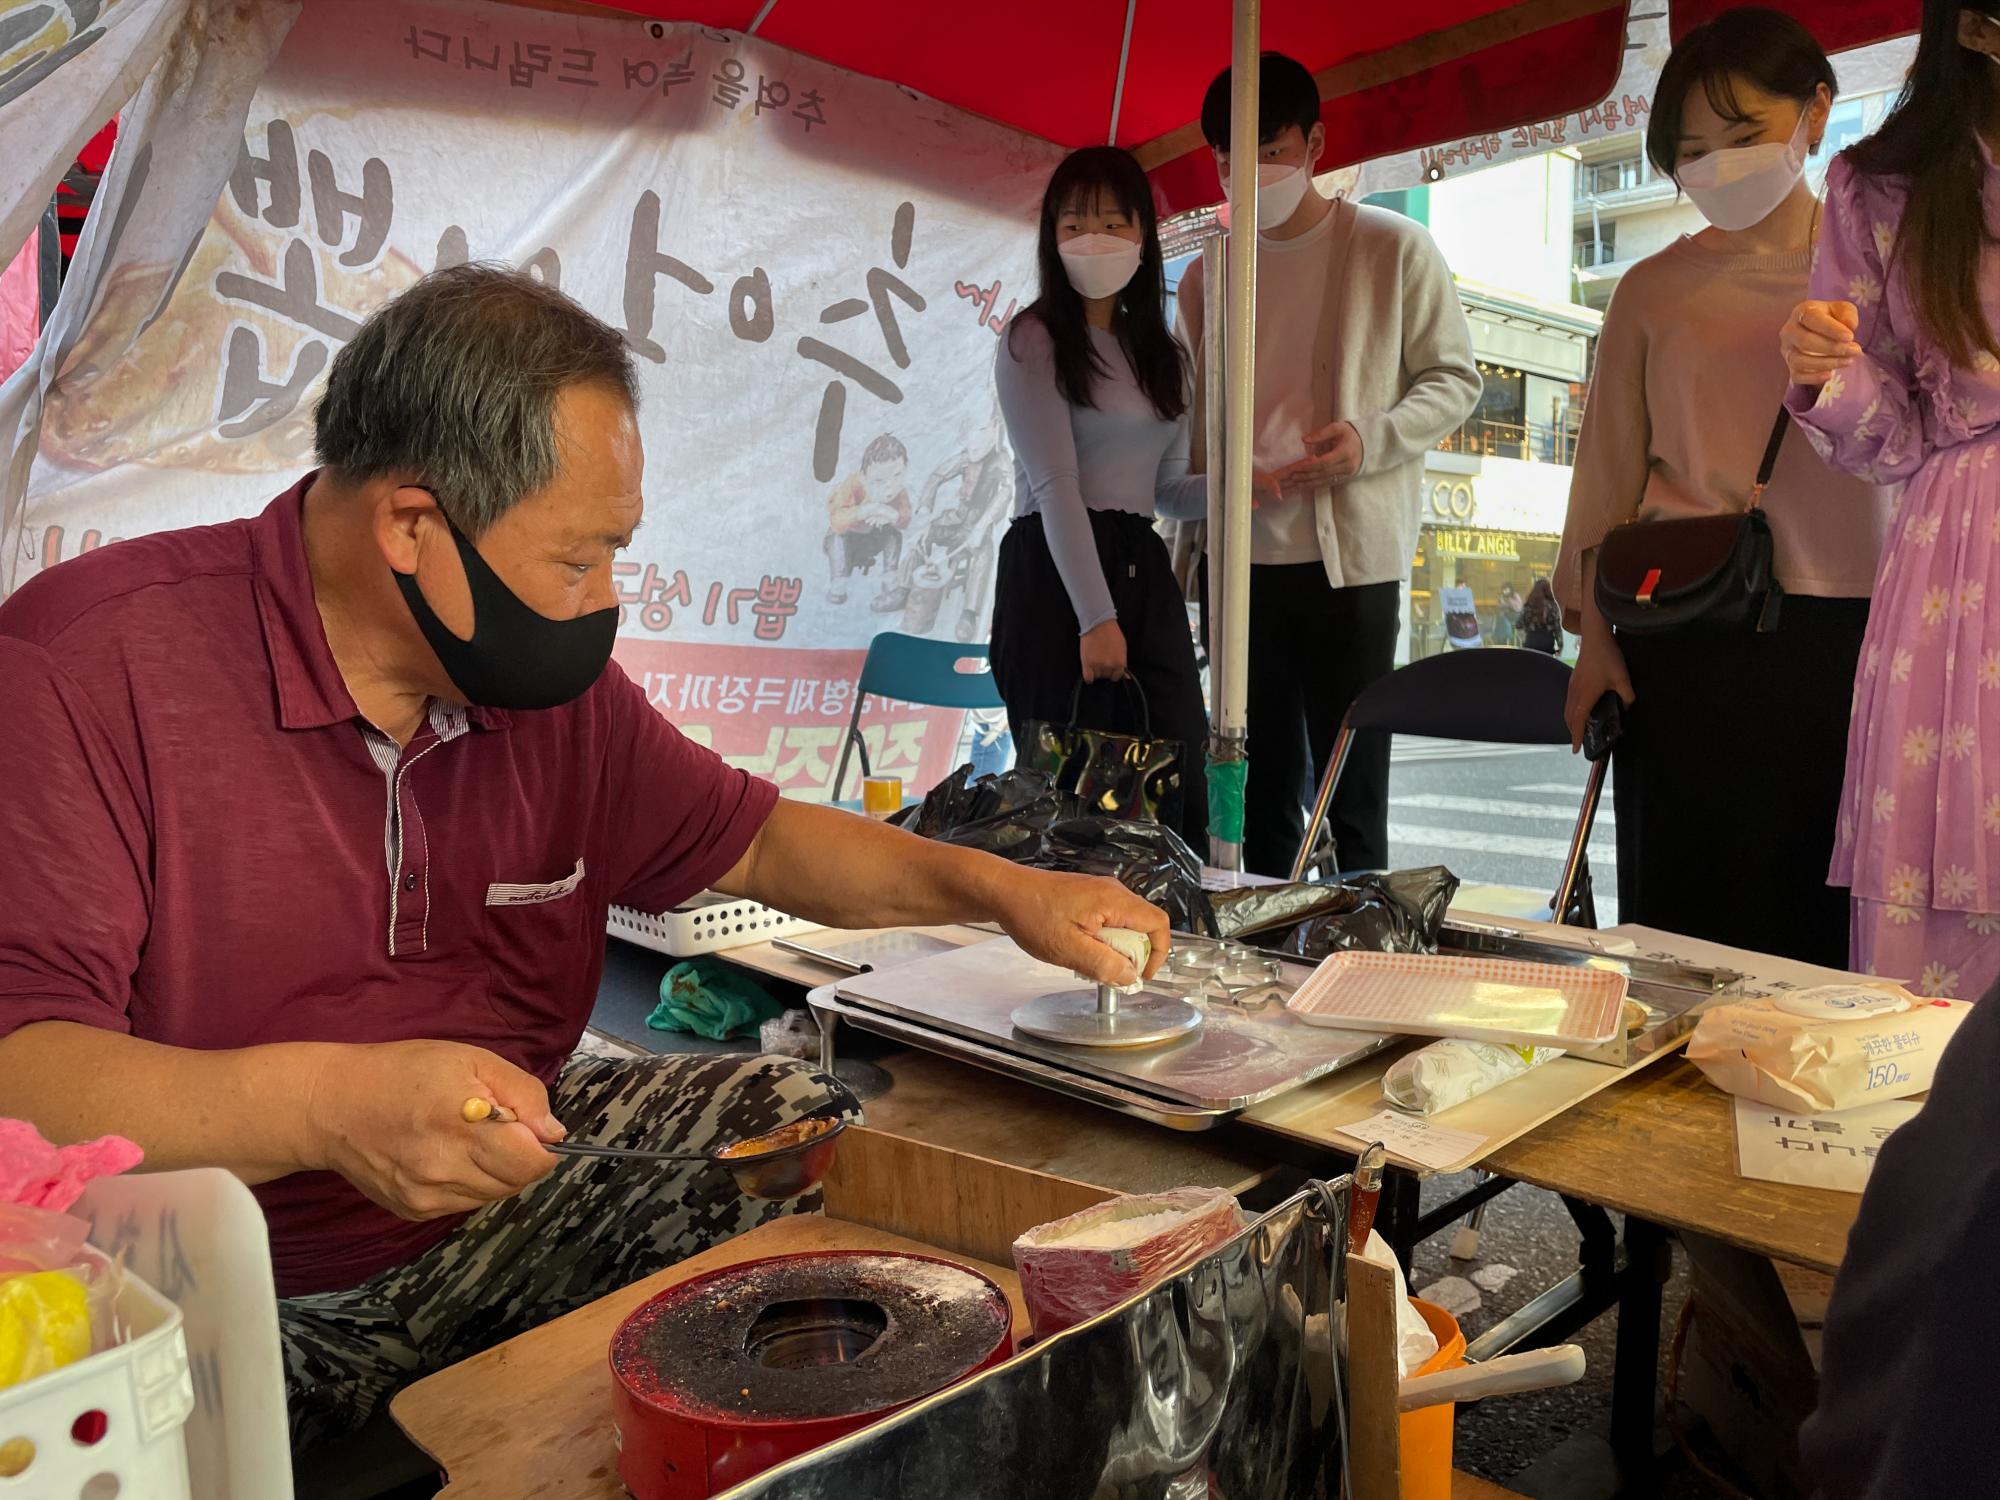 $!ILim Chang-joo continúa vendiendo las dalgonas en su puesto callejero que se ha convertido en uno de los más populares de Seúl tras el éxito de la serie.